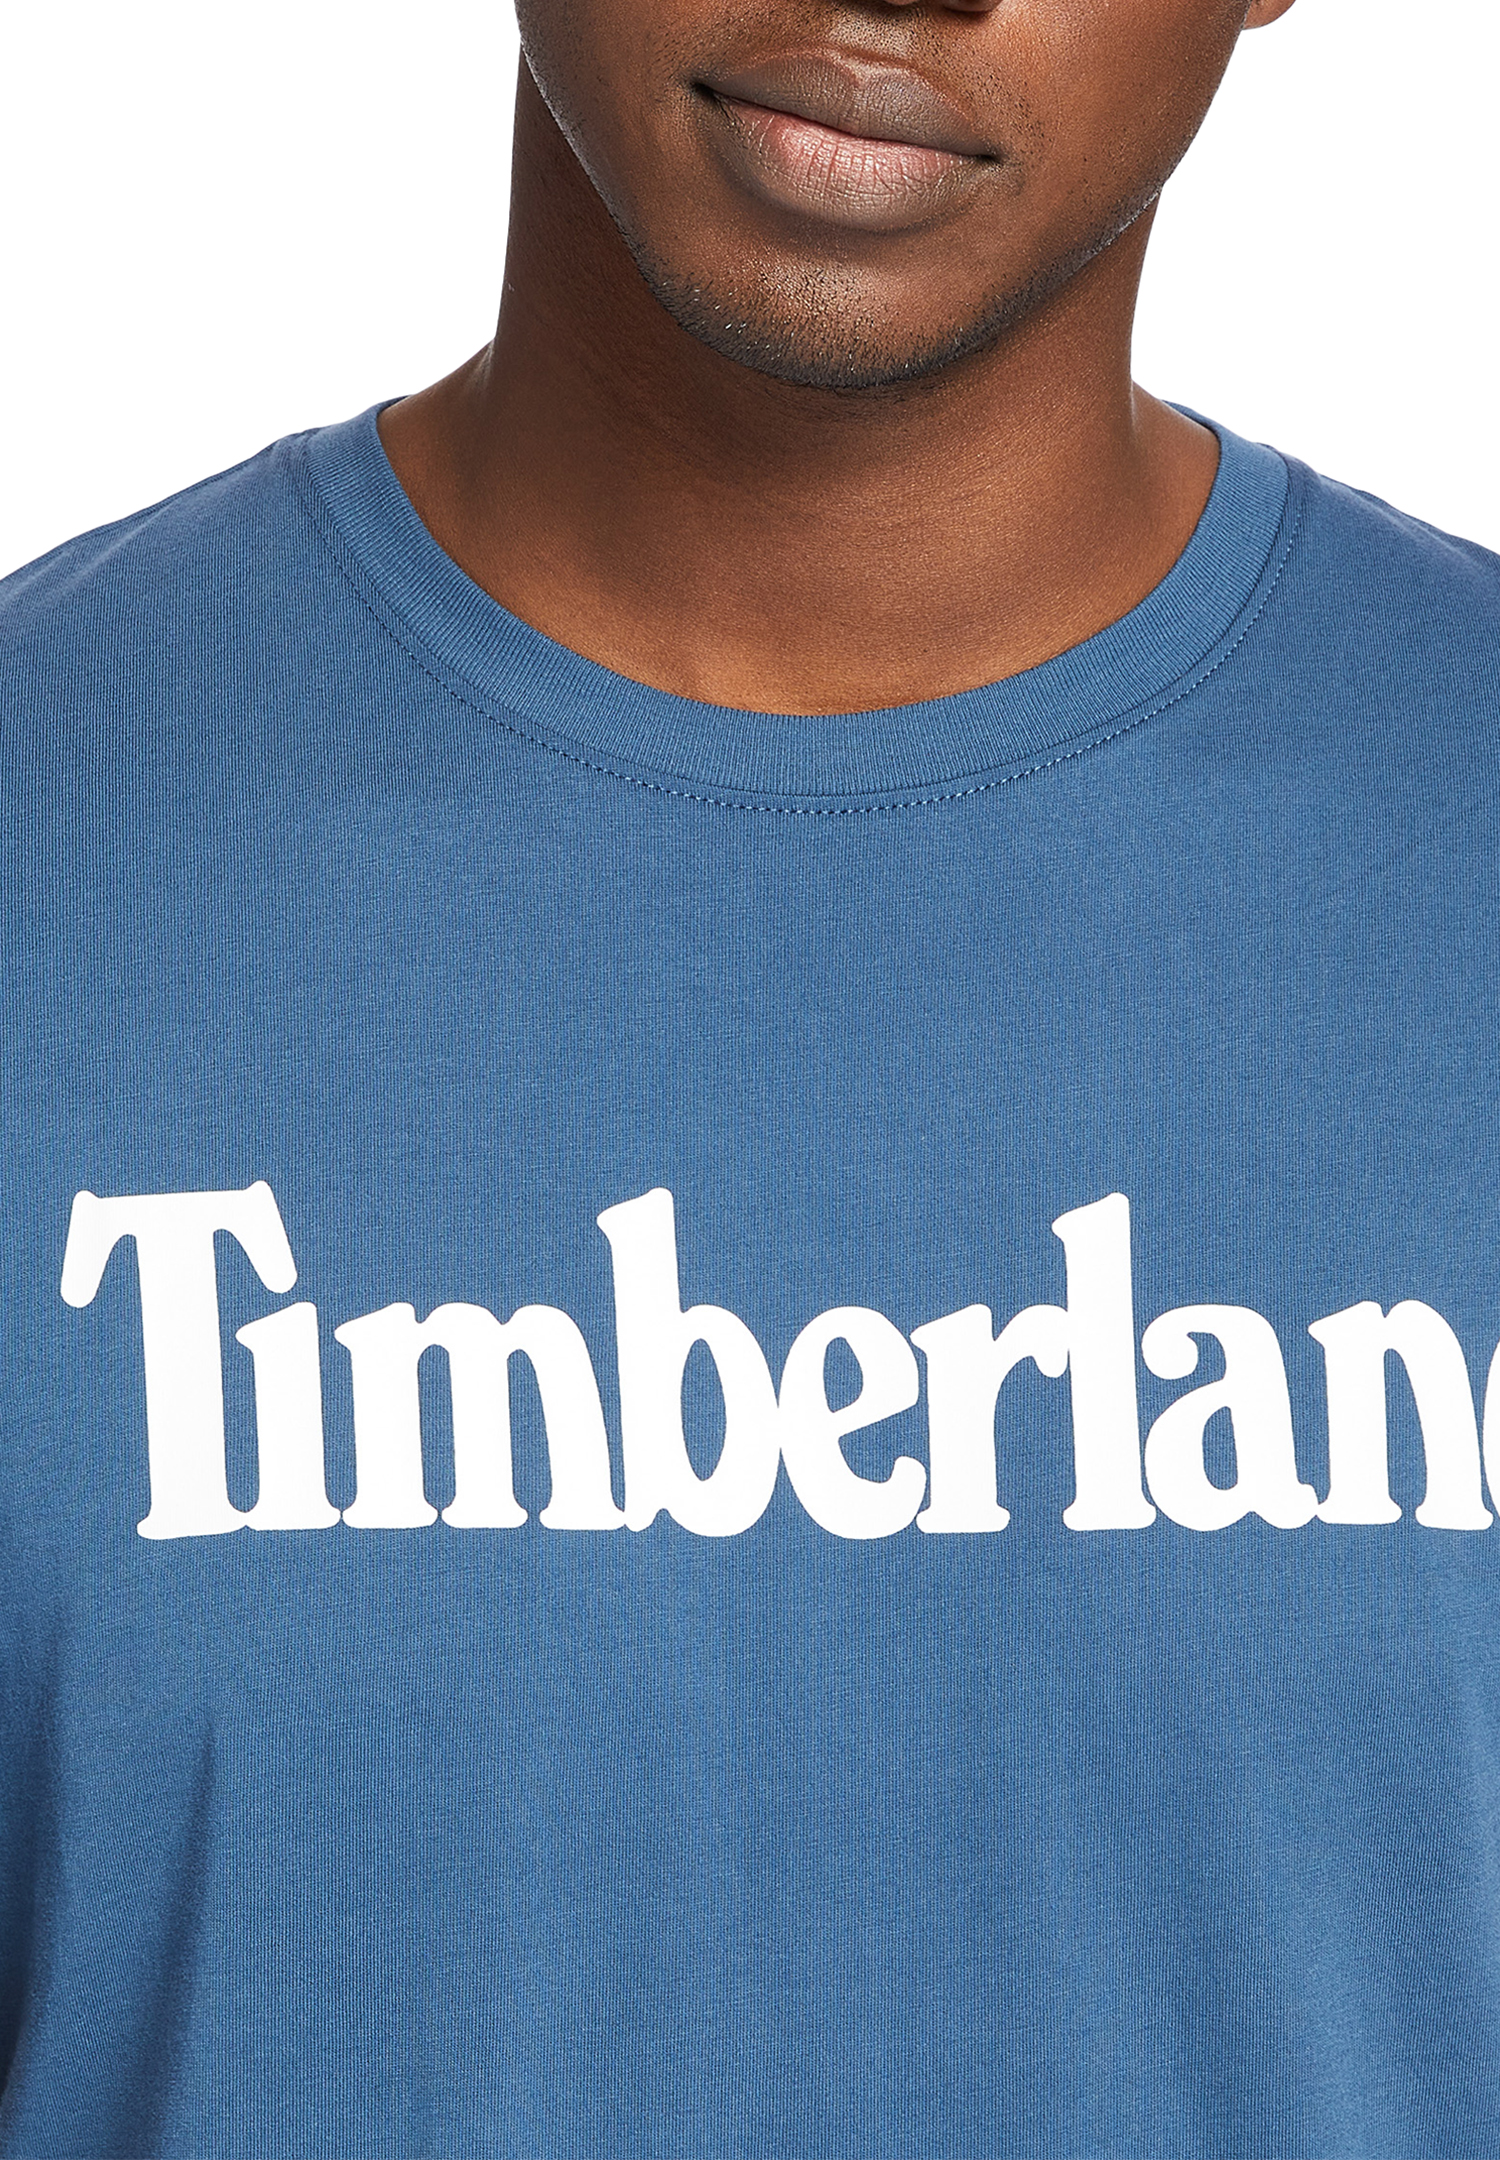 Timberland TFO SS Linear Tee Herren T-Shirt Shirt TB0A2BRN Blau von Timberland